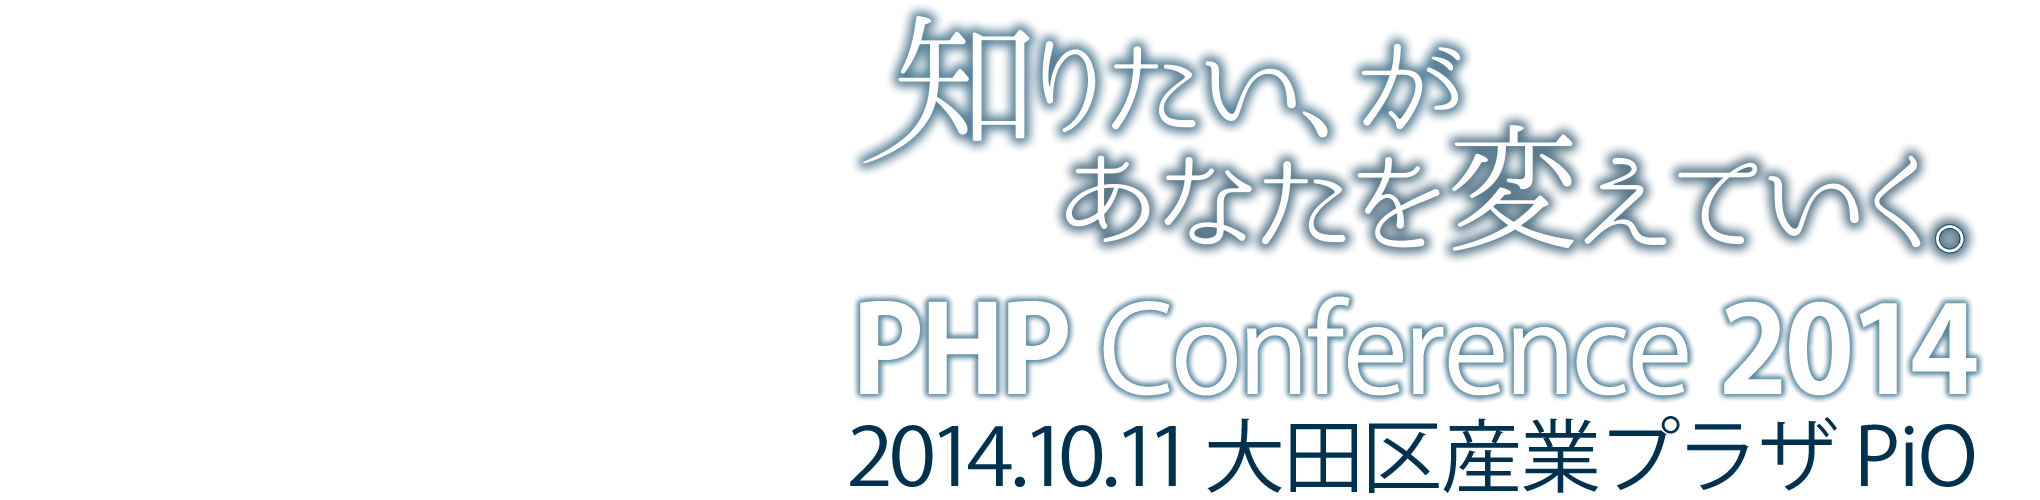 PHPカンファレンス2014